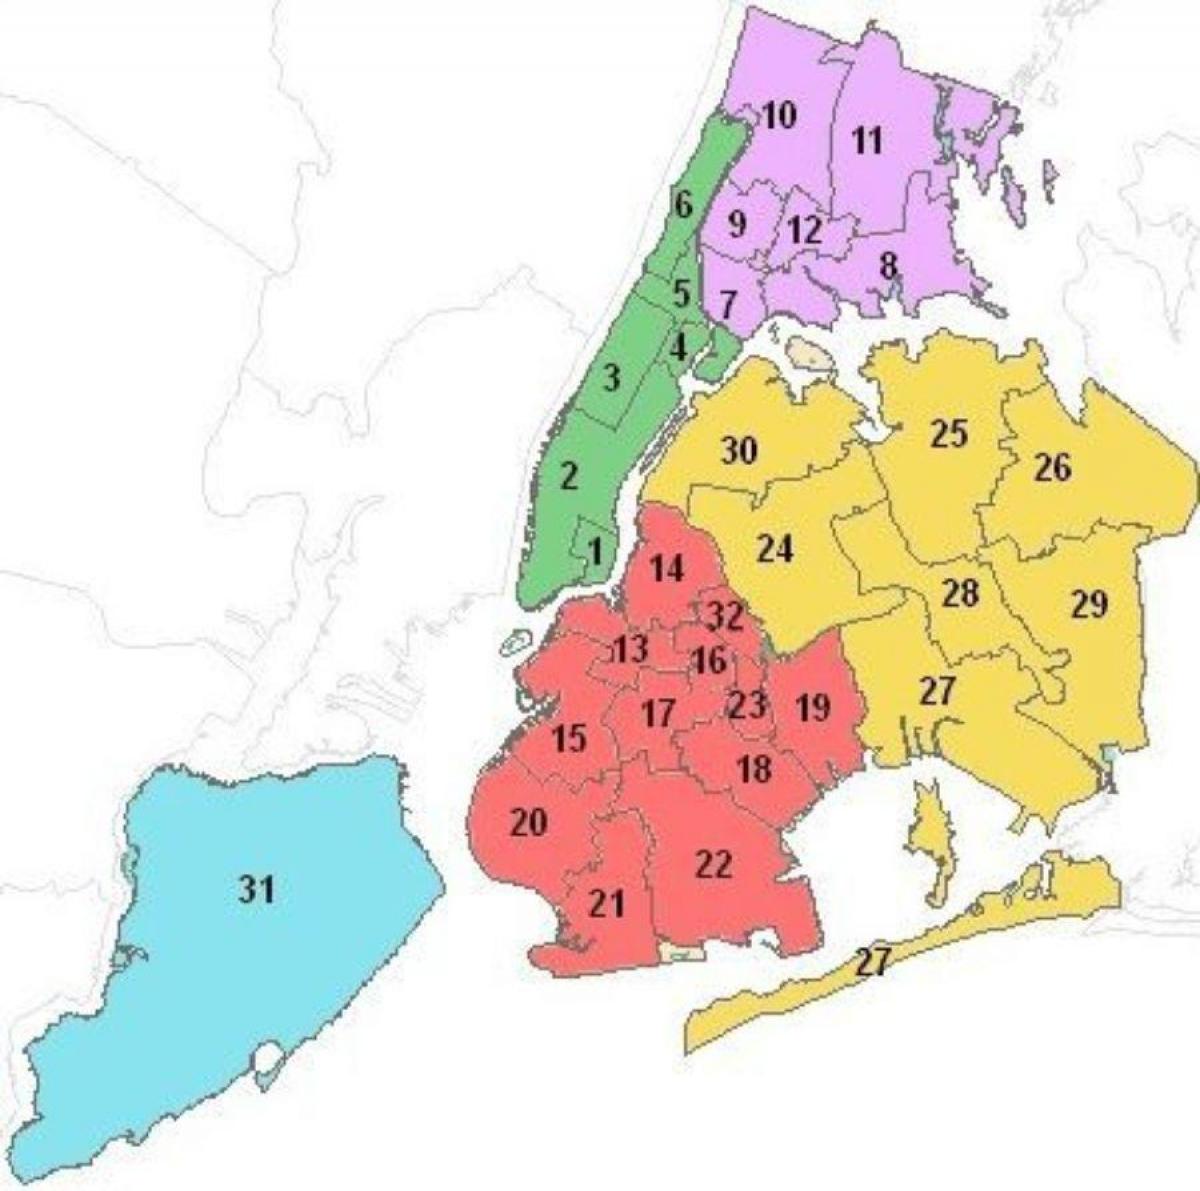 mapę okręgów szkolnych w Nowym Jorku